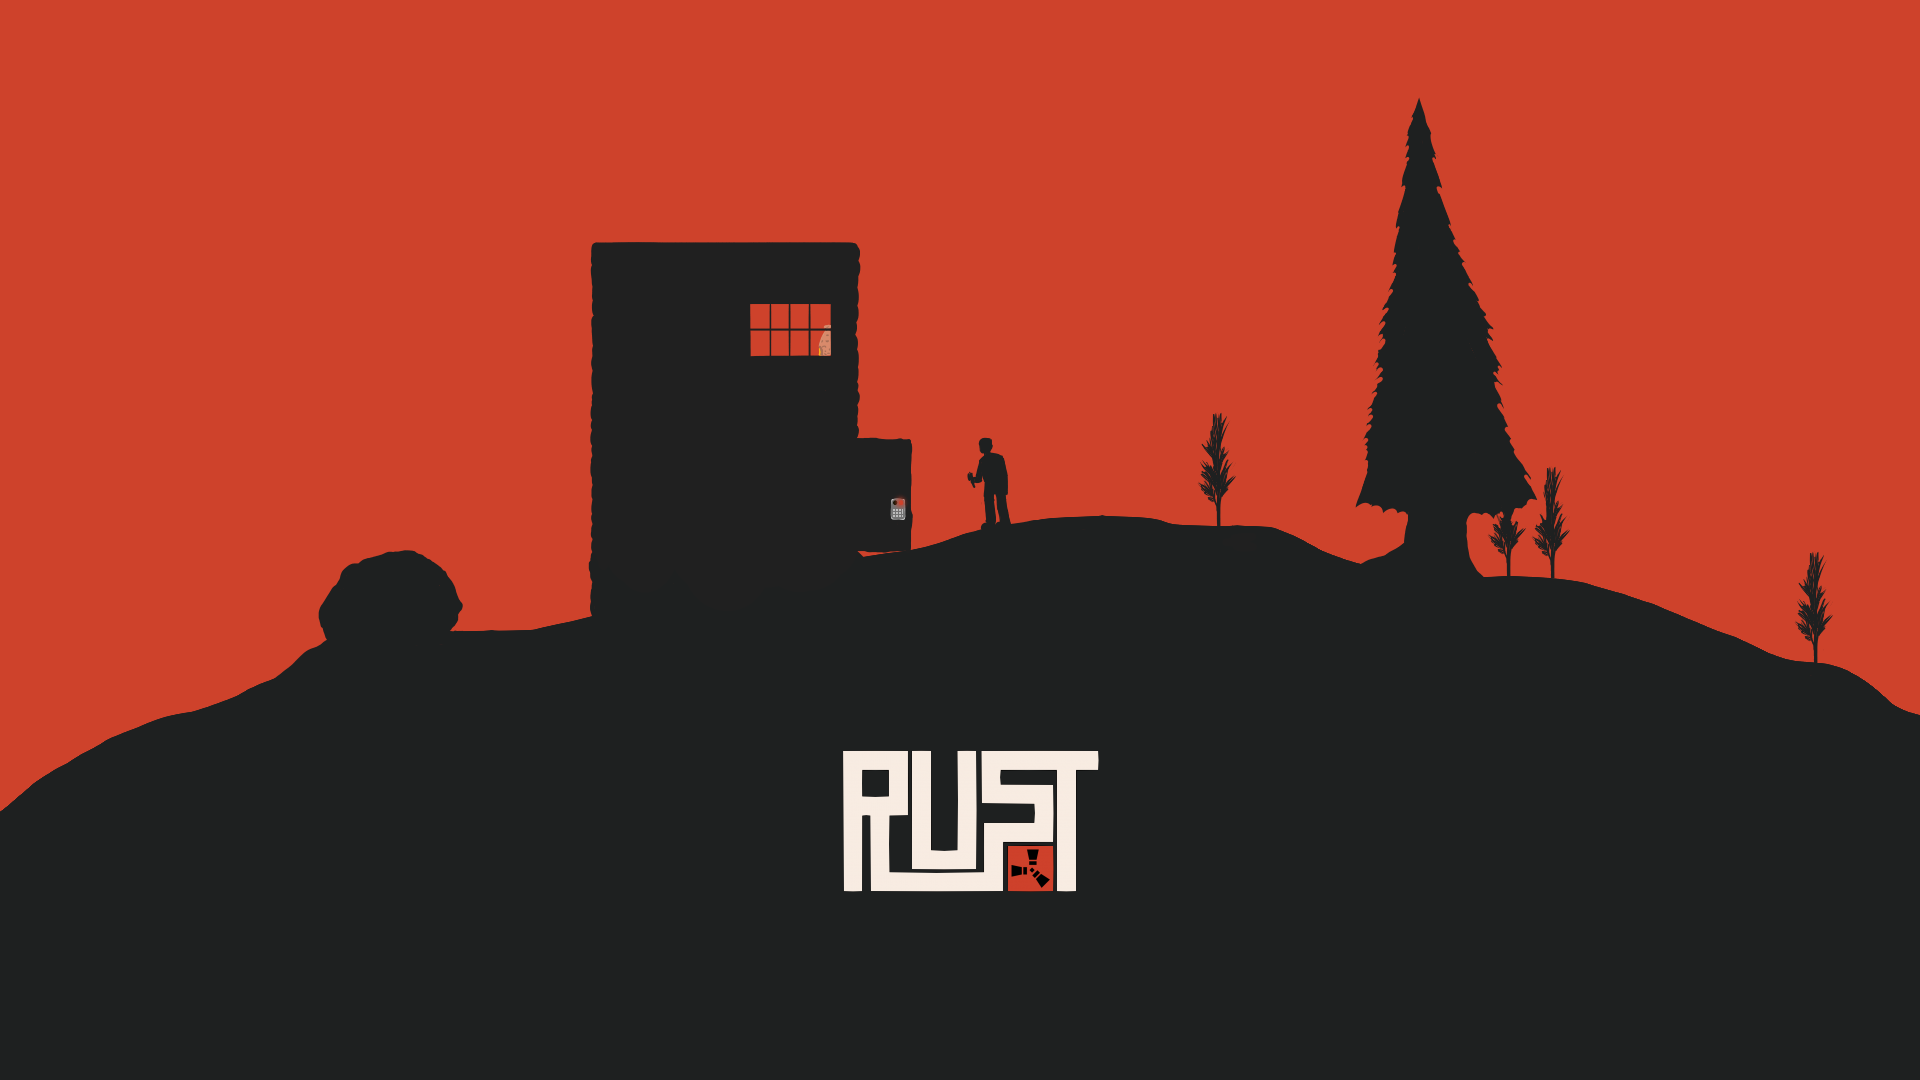 Обои на телефон раст. Rust логотип. Логотип игры Rust. Фон раст. Логотип для сервера Rust.